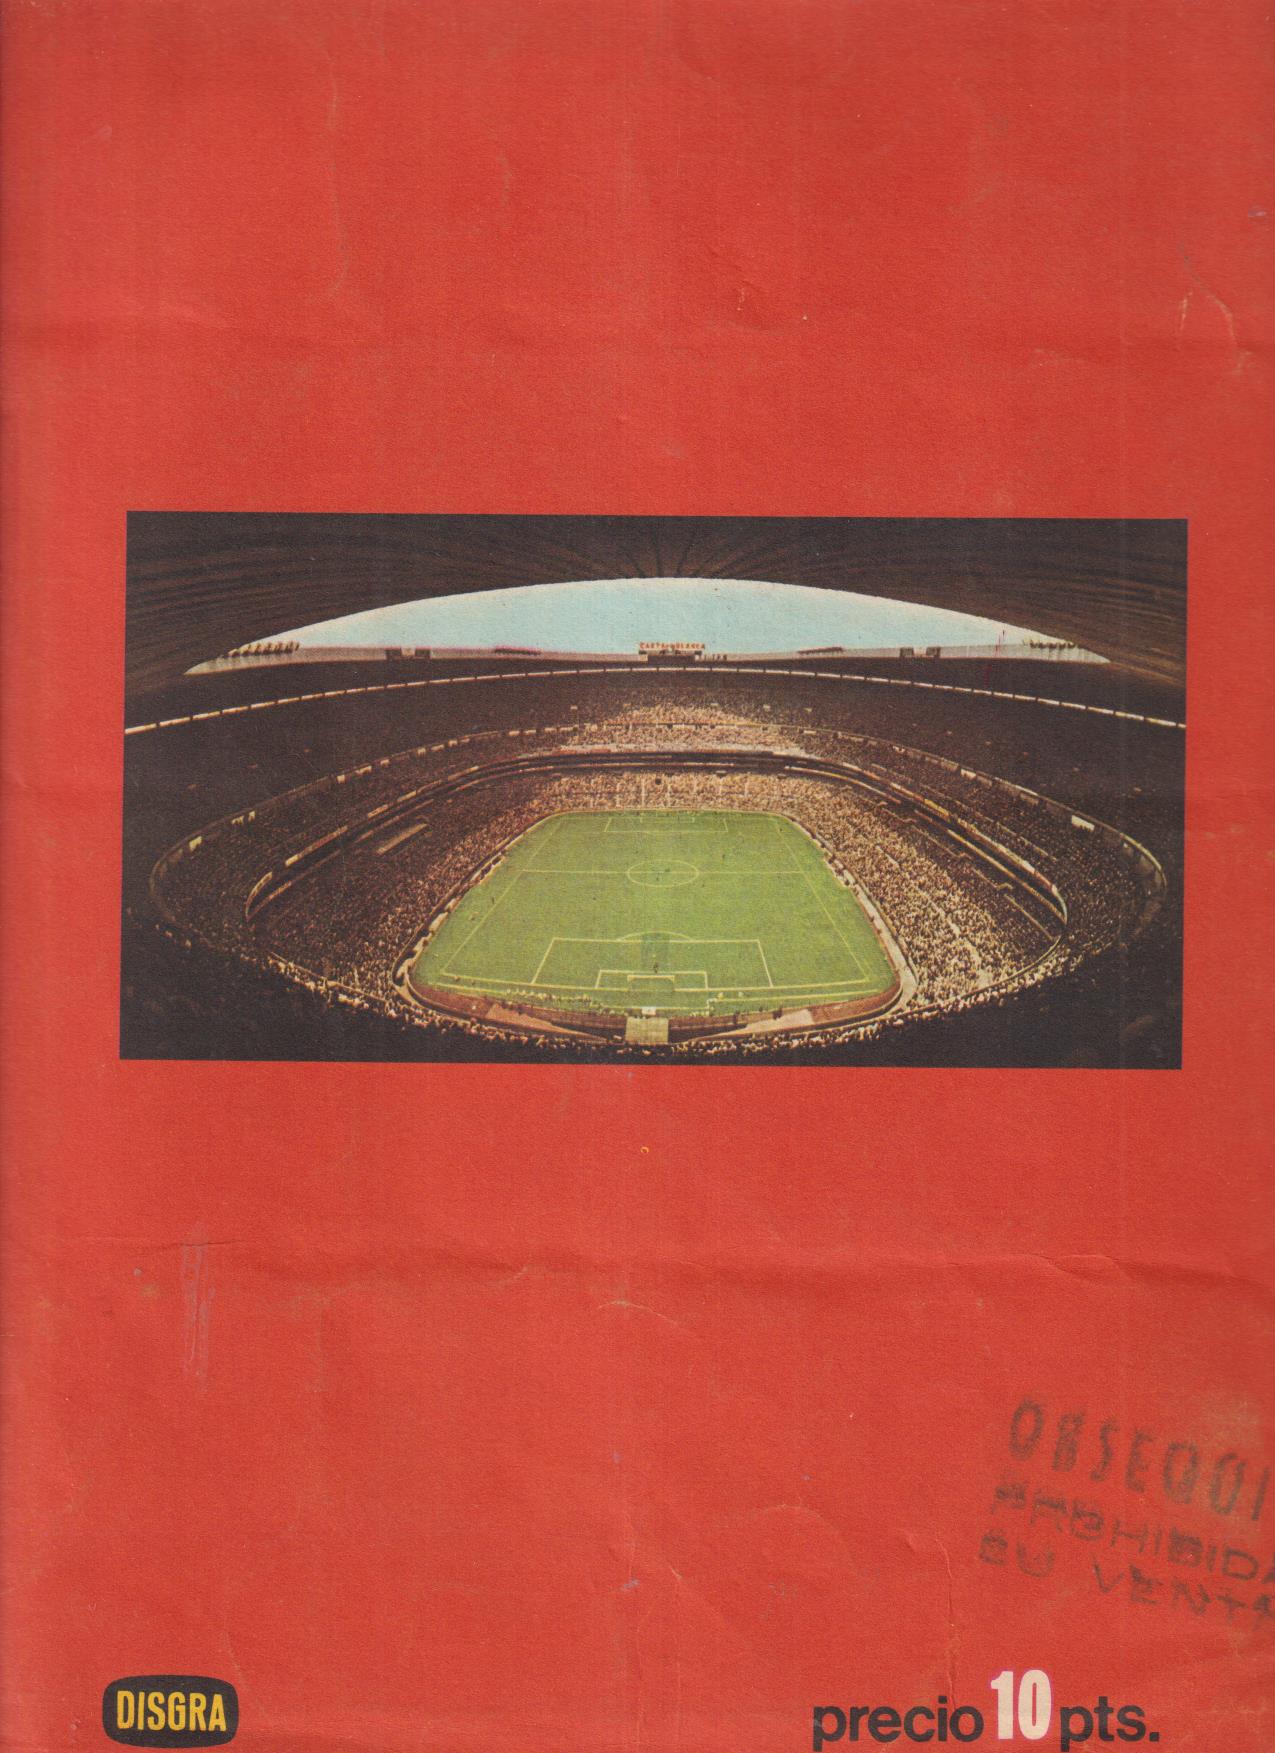 Álbum Ases del IX Mundial de Futbol, México 1970. Disgrá. Contiene 215 de 272 cromos